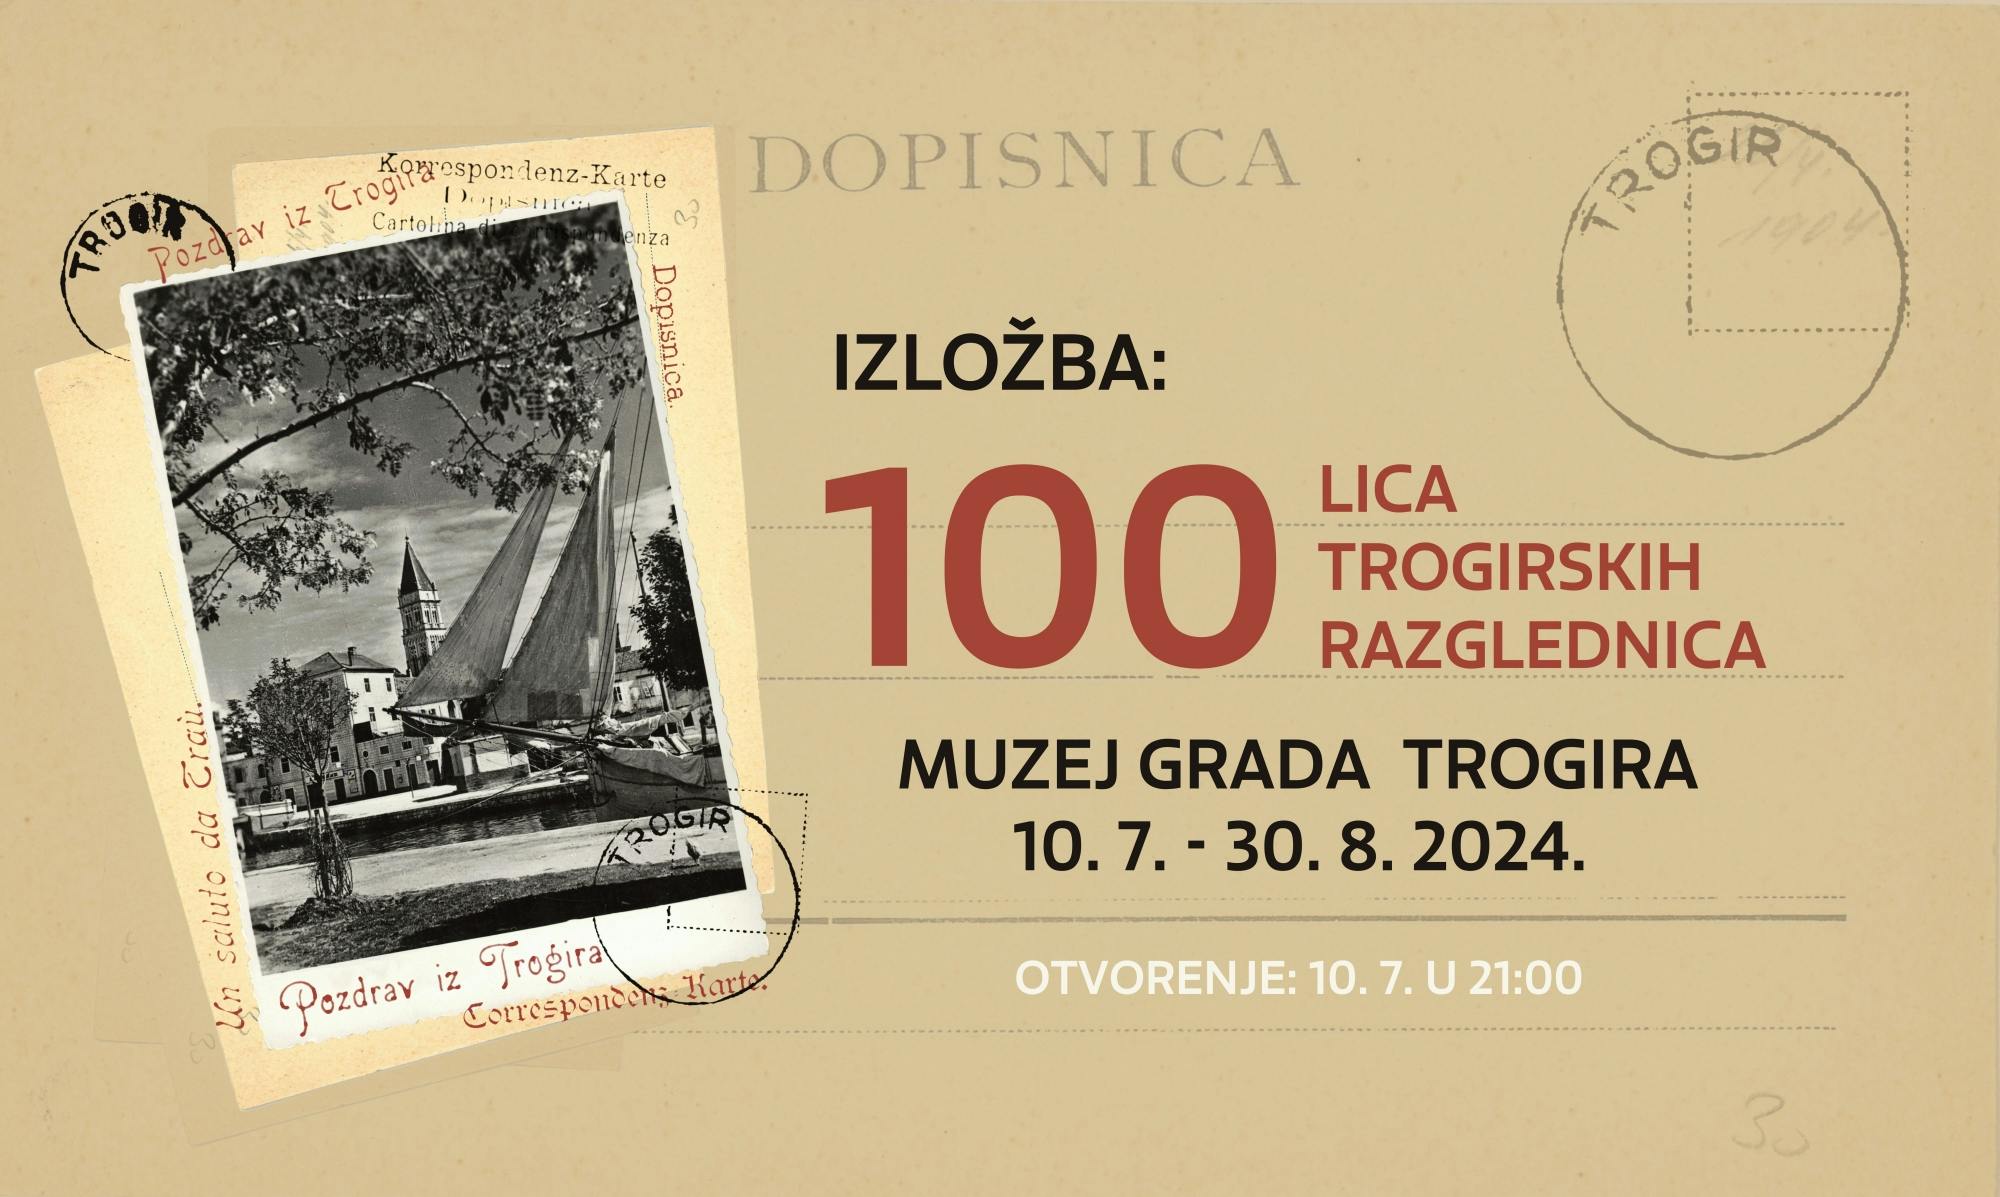 Izložba “100 lica trogirskih razglednica”